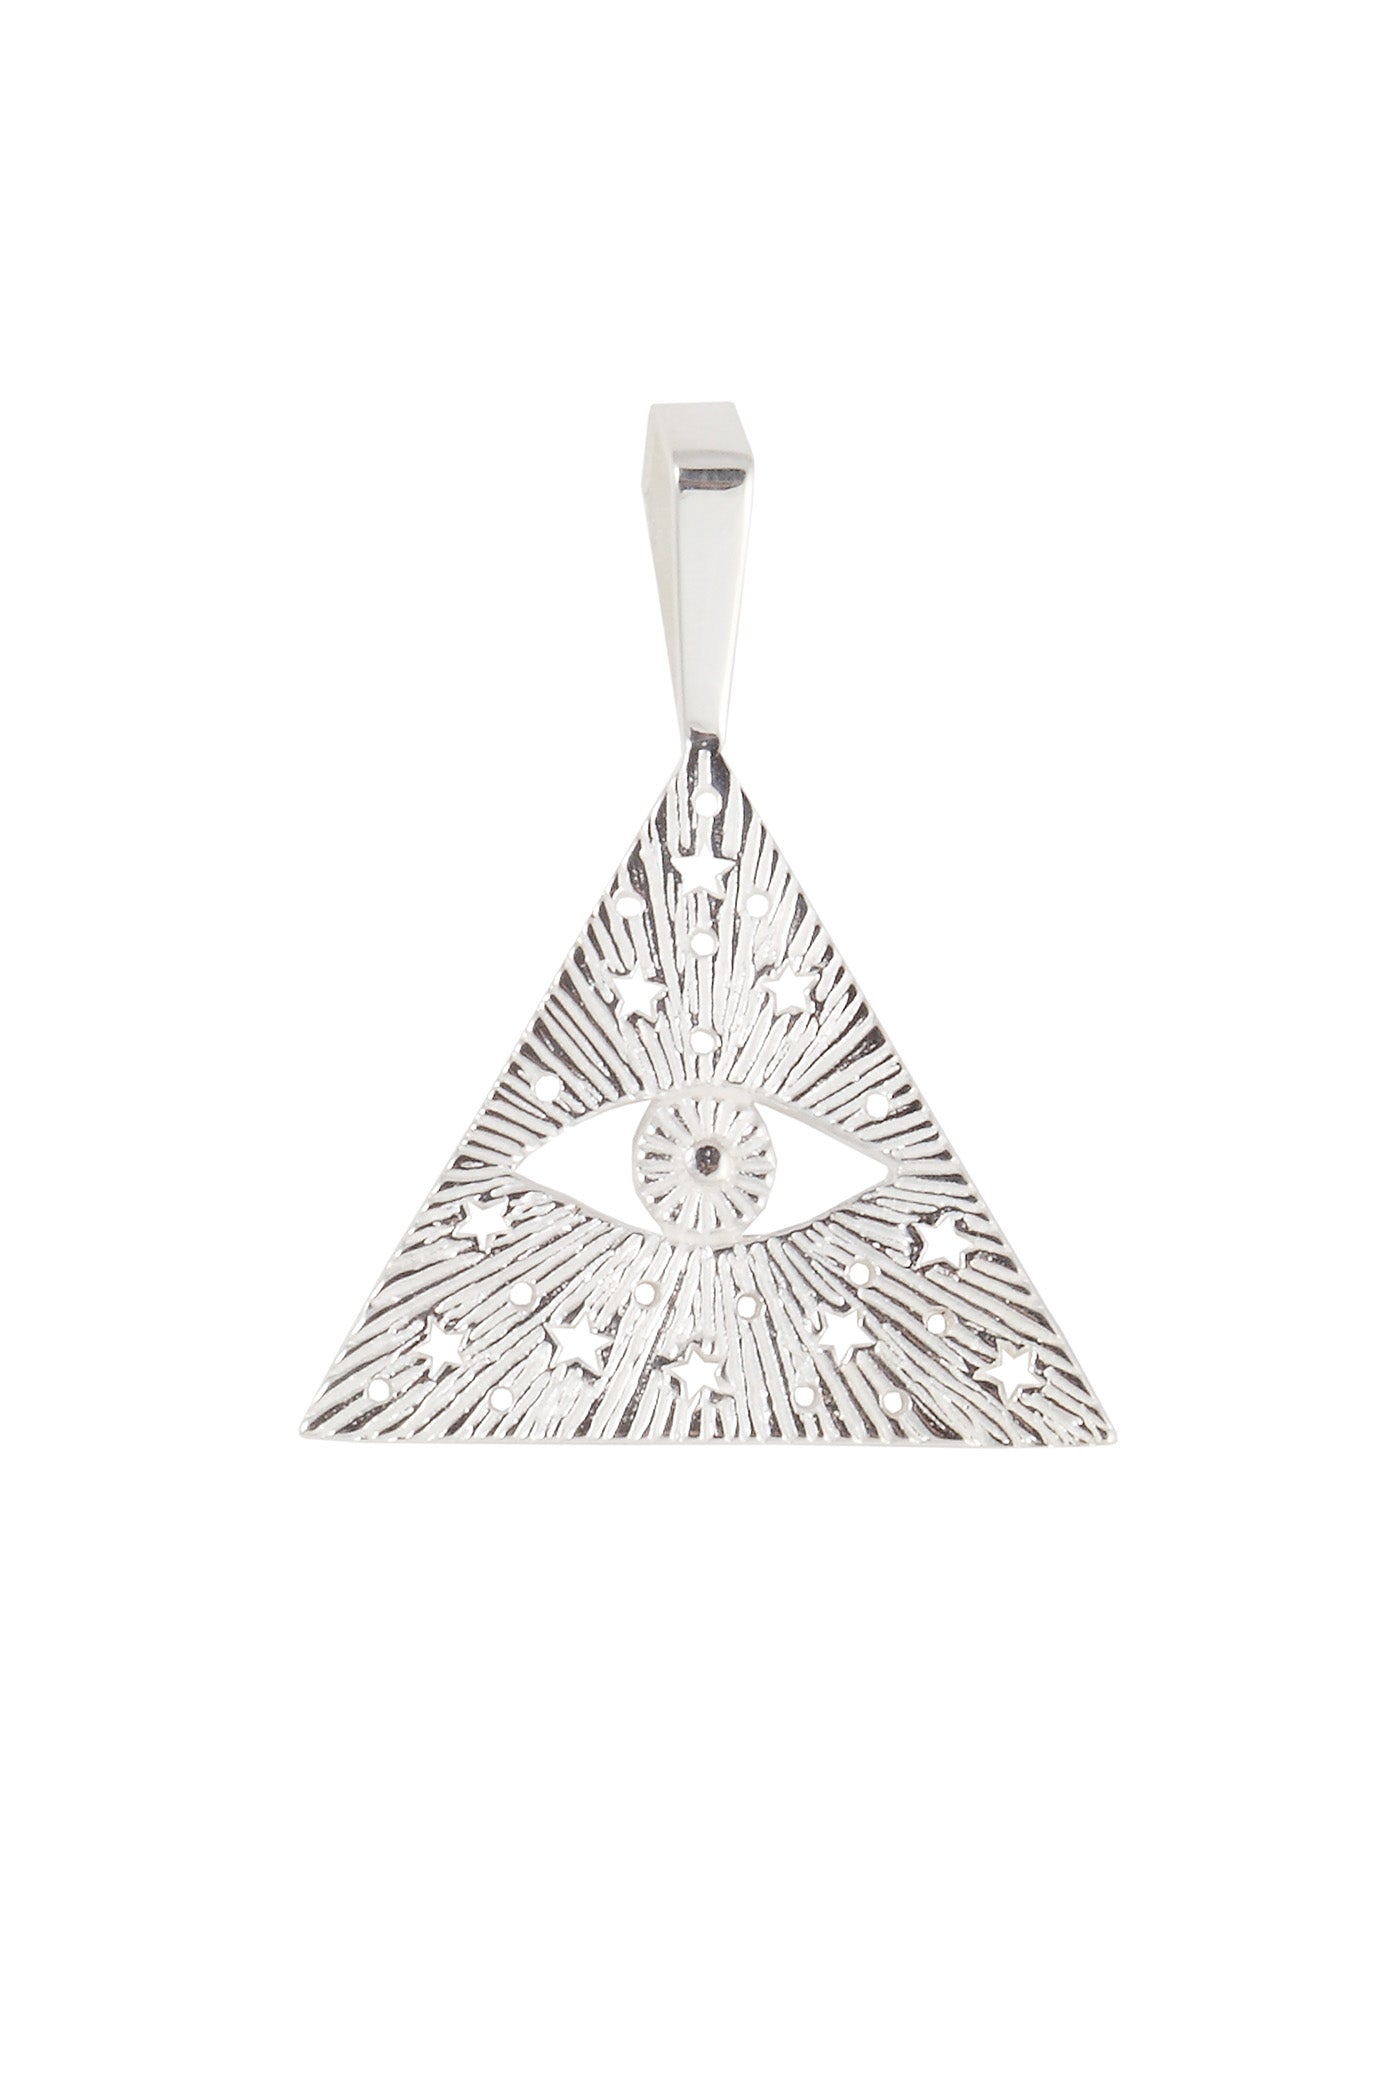 All-seen-eye pendant for men. Silver